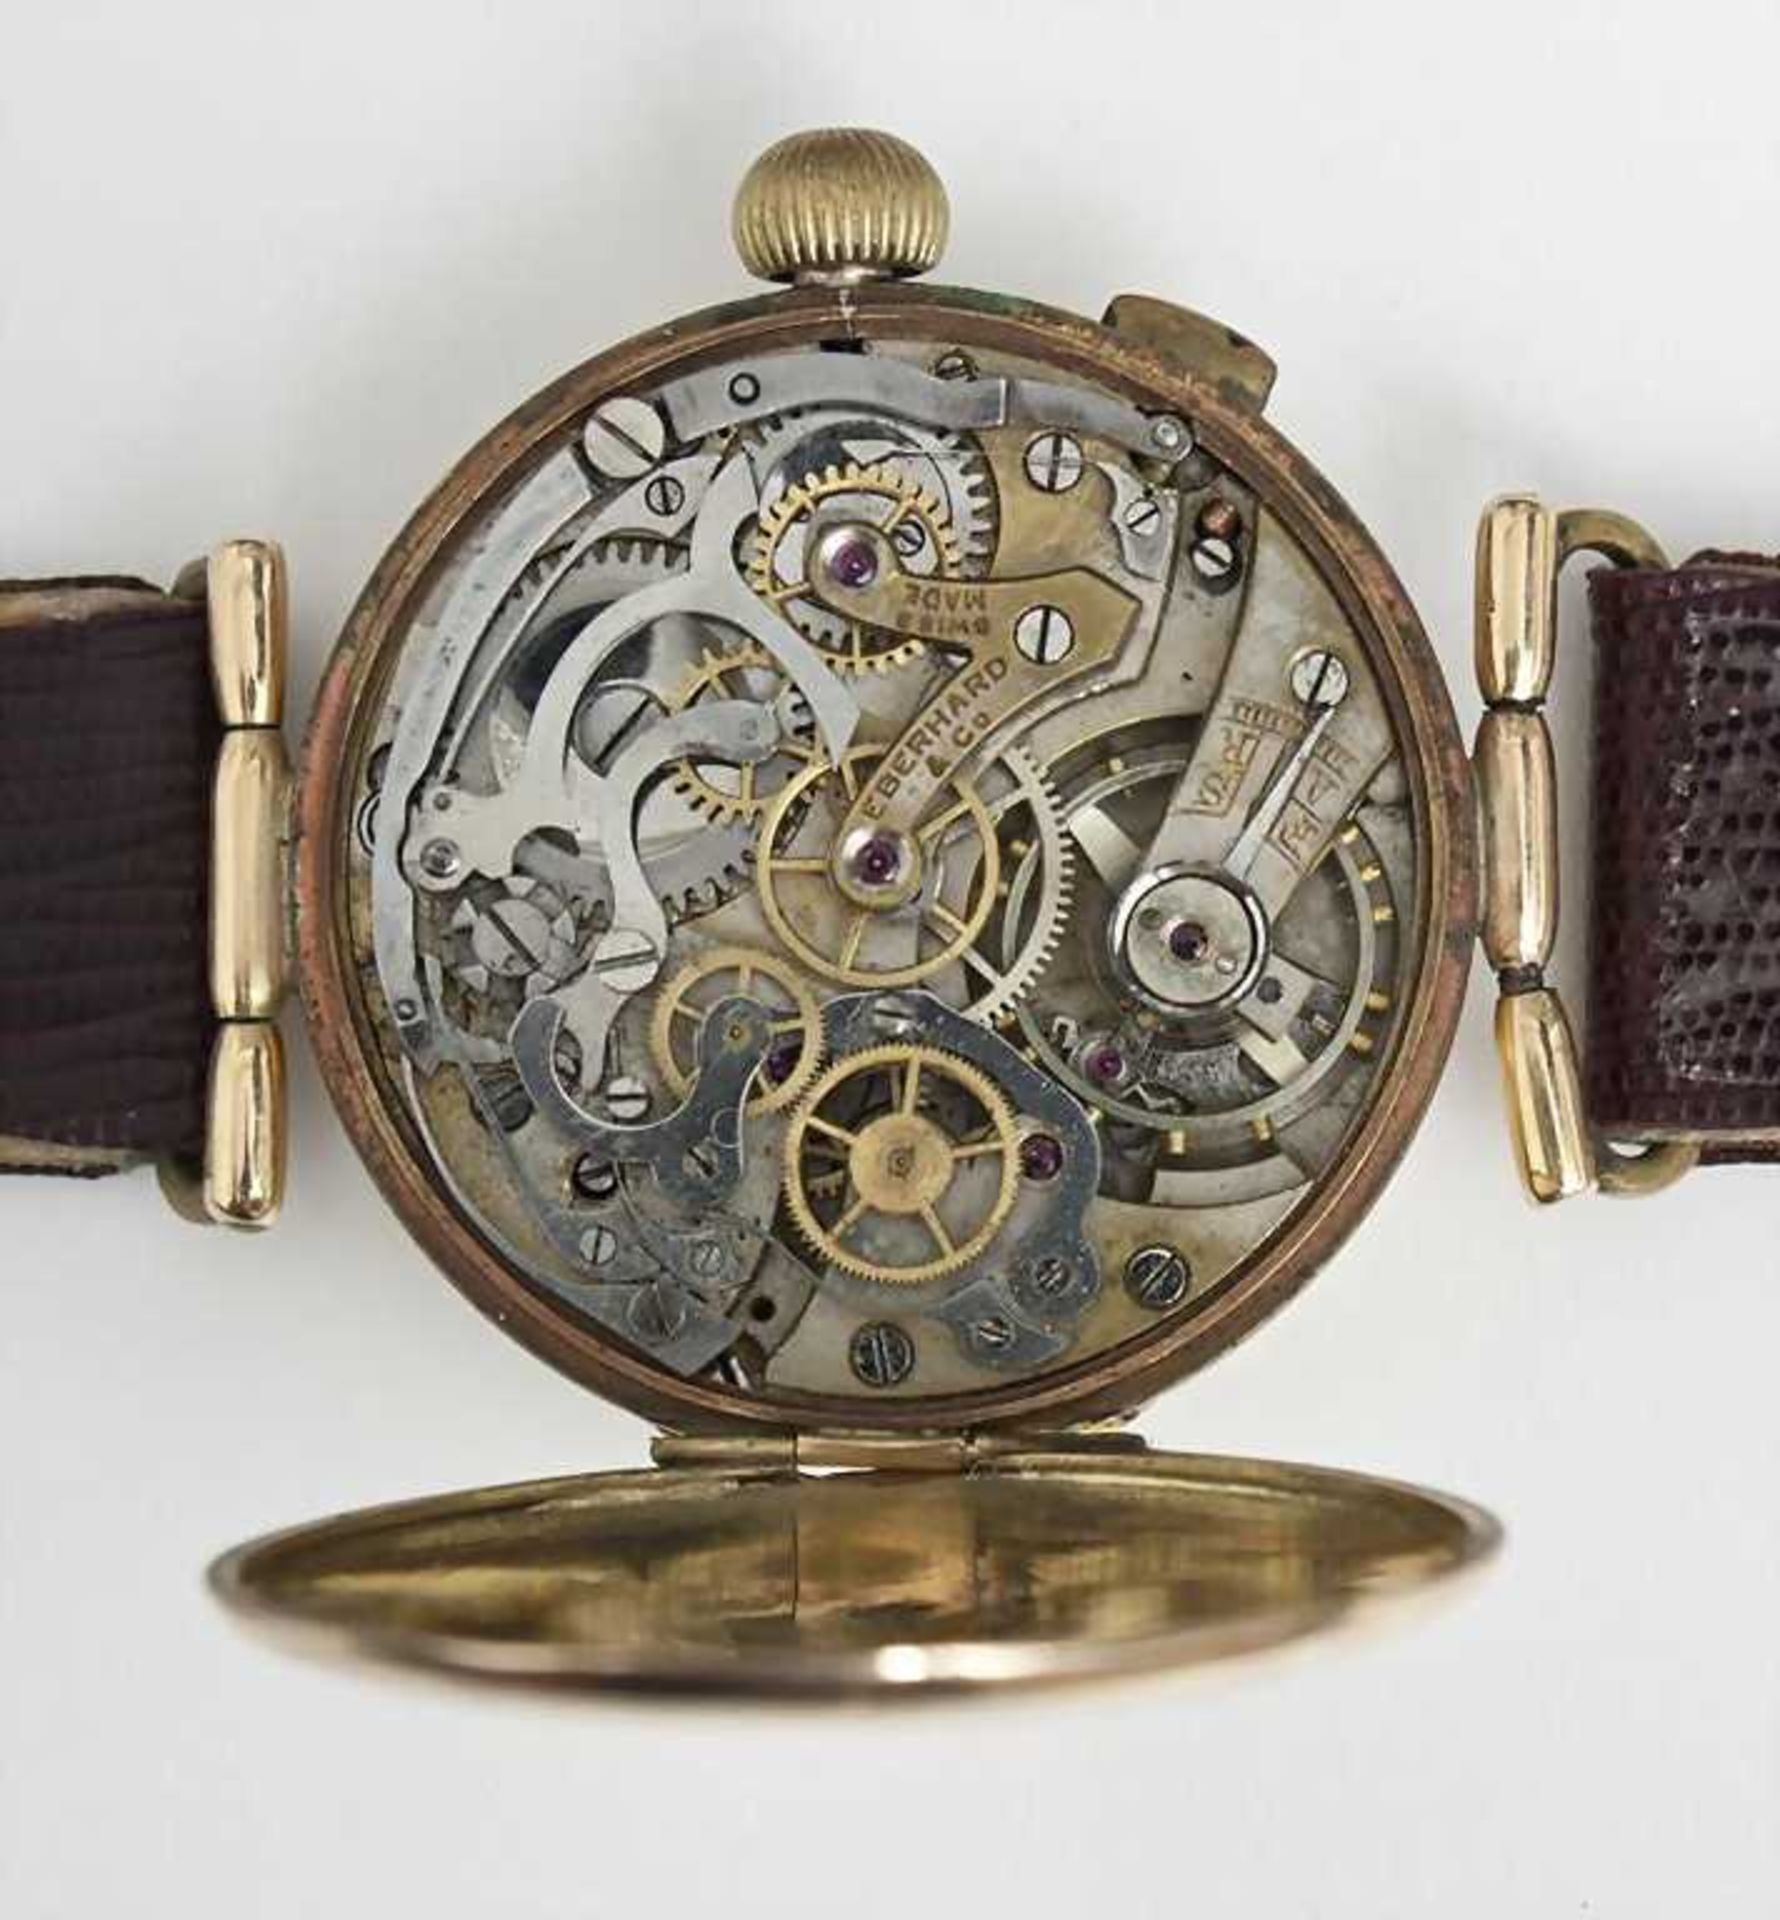 HAU/Gold Chronograph, Eberhard, Chaud de Fonds, Schweiz, um 1925 Eindrückerchronograph. Gehäuse GG - Bild 2 aus 2